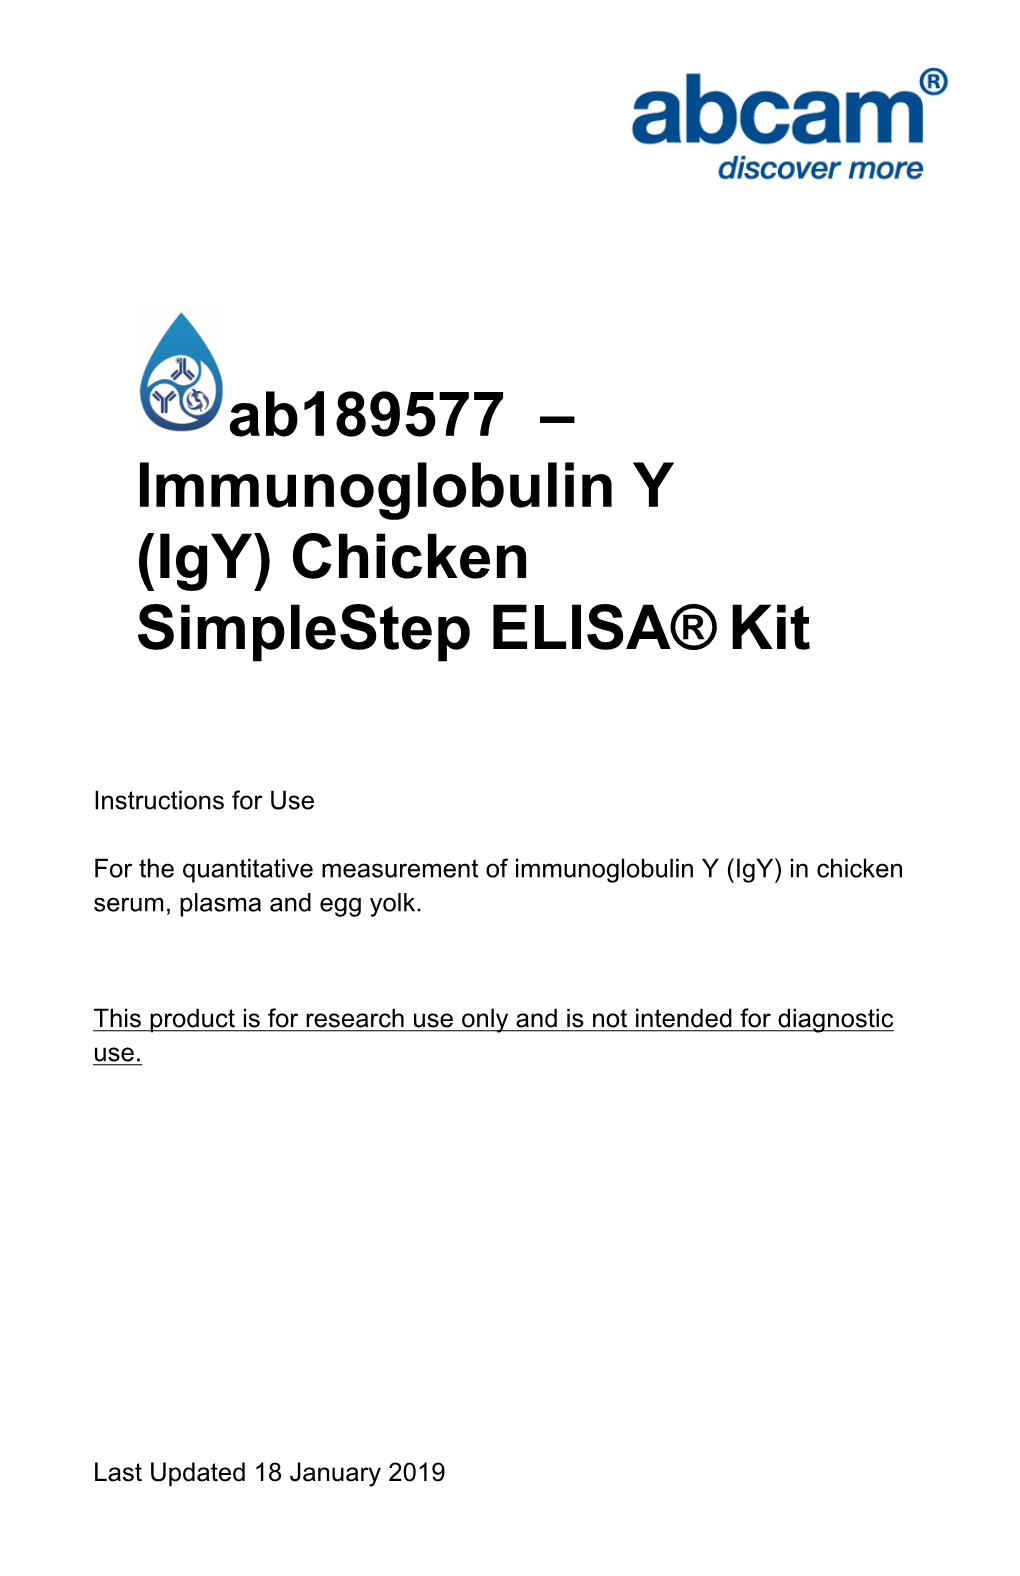 Ab189577 – Immunoglobulin Y (Igy) Chicken Simplestep ELISA® Kit